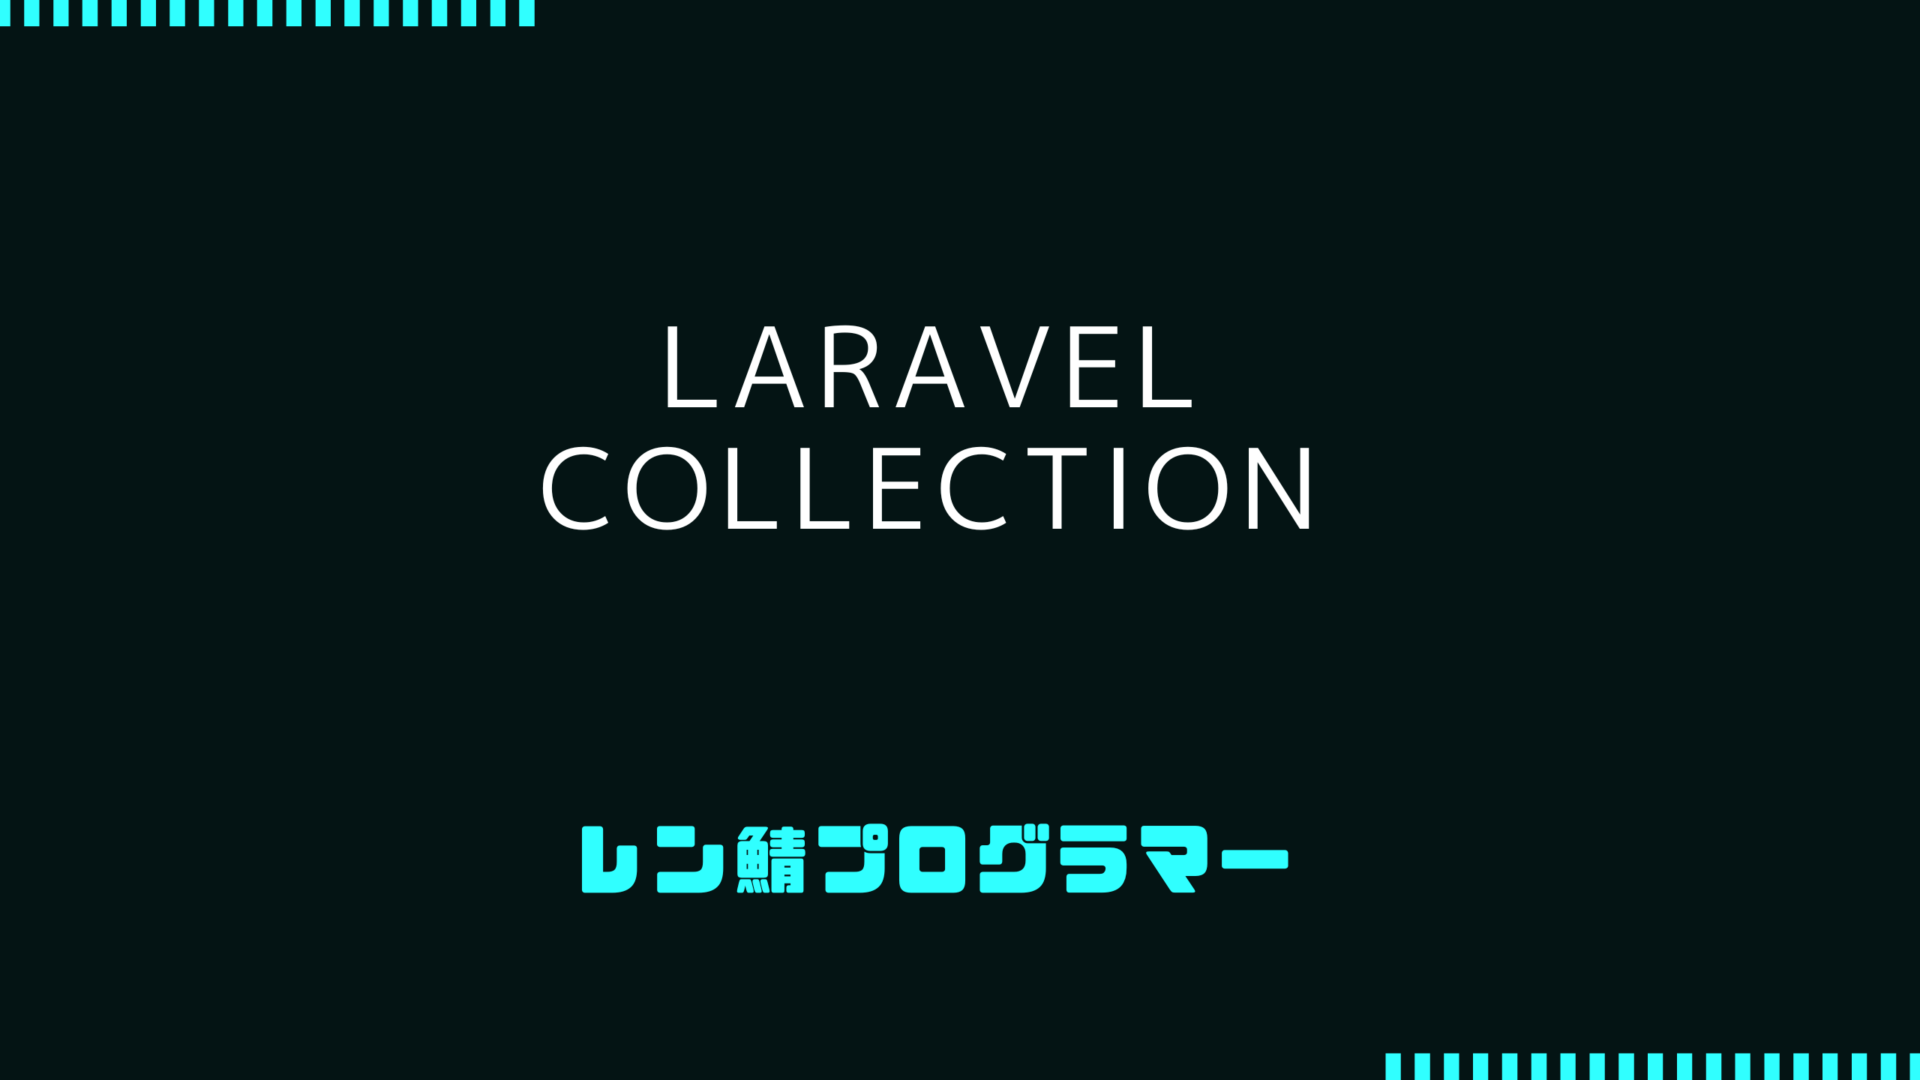 LaravelのCollectionで実際のプロジェクトに使用した物を紹介